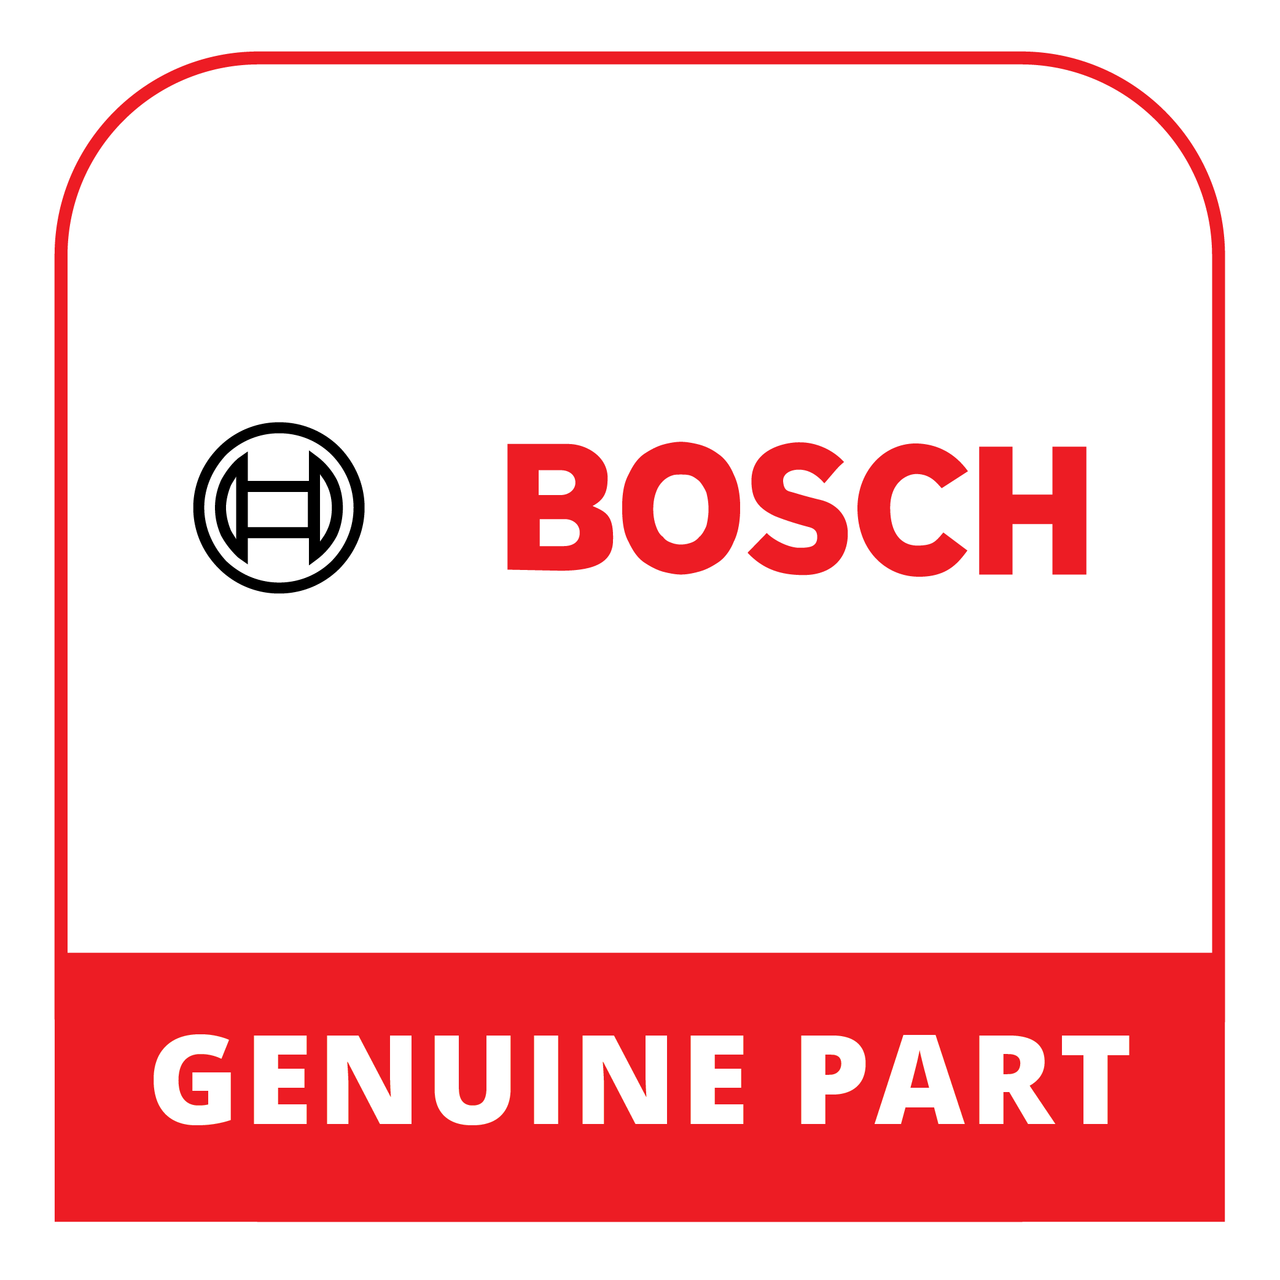 Bosch (Thermador) 20000233 - Door - Genuine Bosch (Thermador) Part